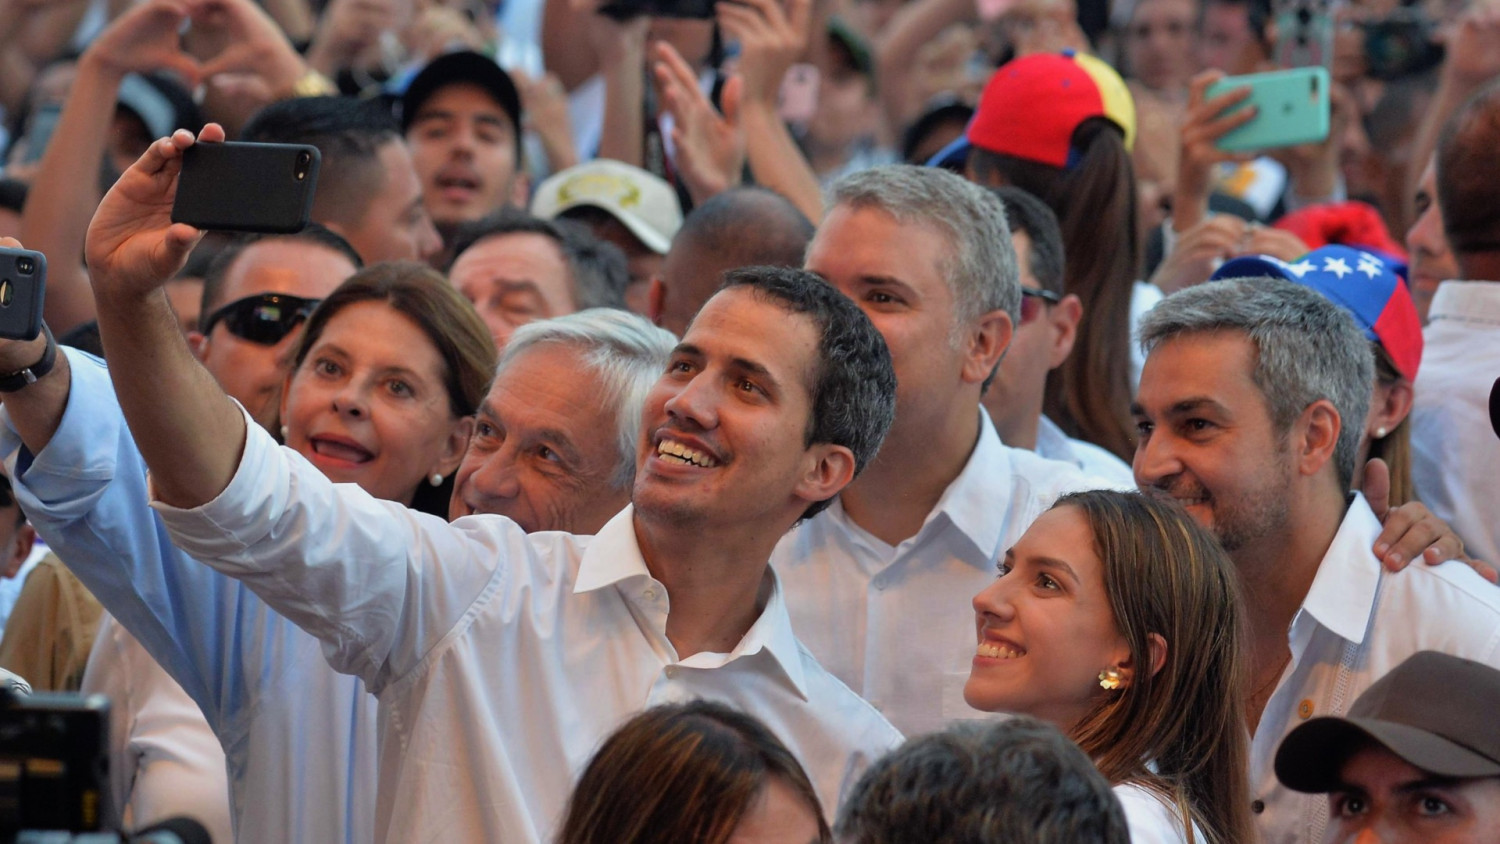 Venezuelan Opposition Leader Guaidó Makes Surprise Appearance as Thousands Attend Venezuela Aid Concert